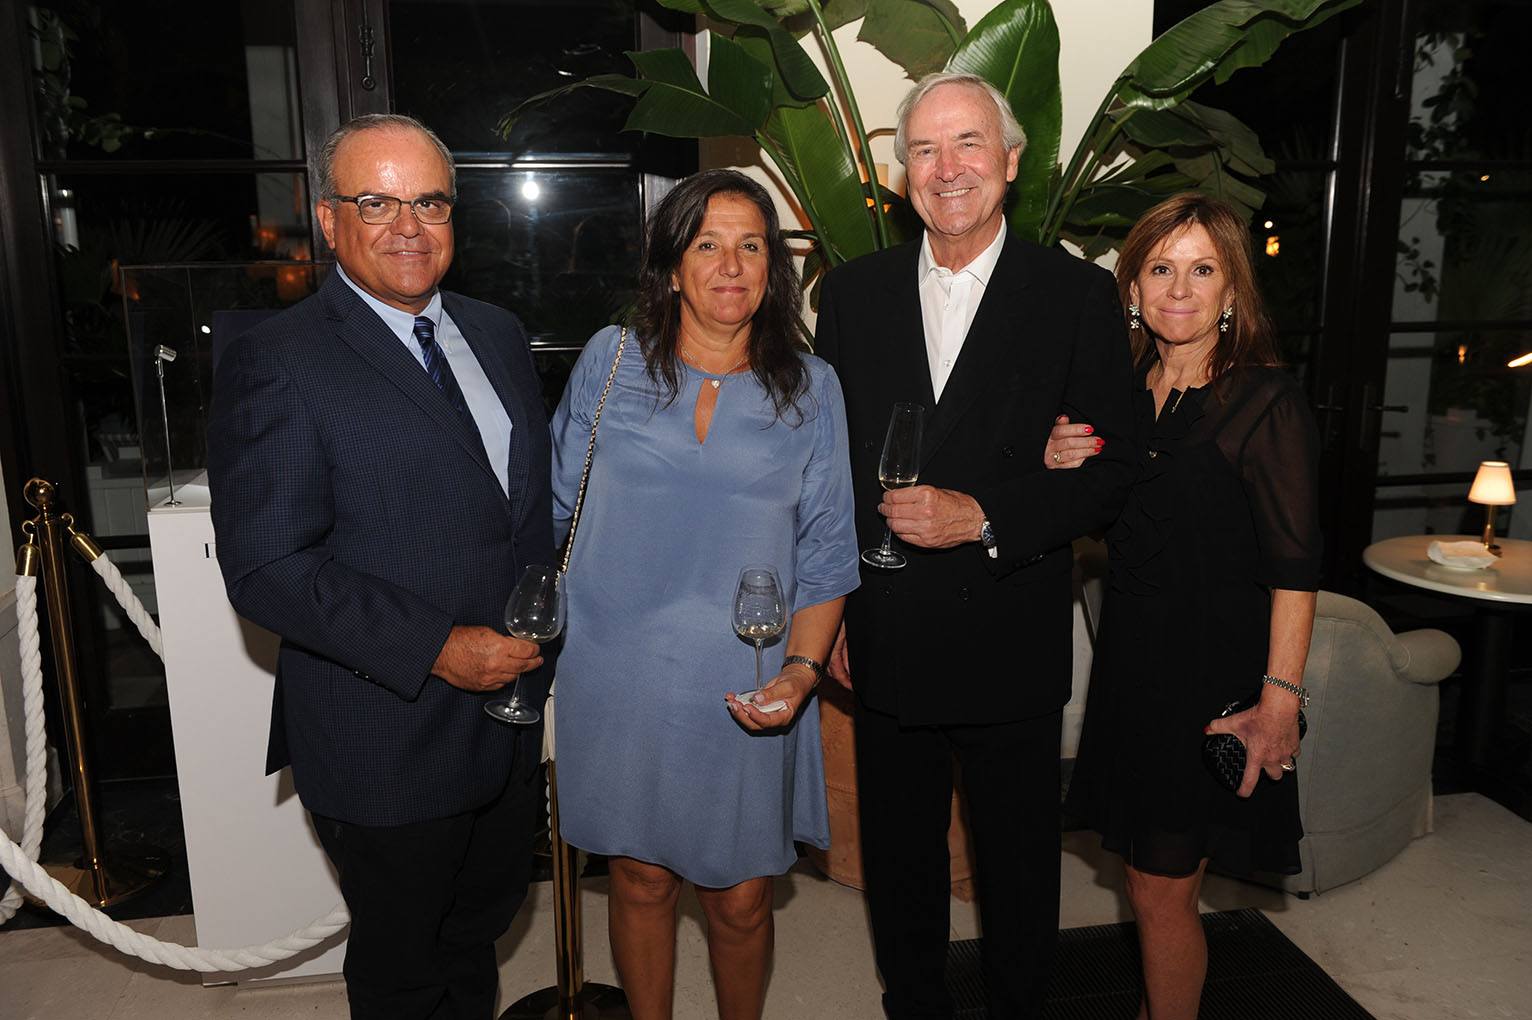 Pietro Romanelli, Elena Romanelli, Andrew Coxon, & Felicity Coxon at Le Sirenuse Miami for De Beers Bal Harbour boutique opening celebration